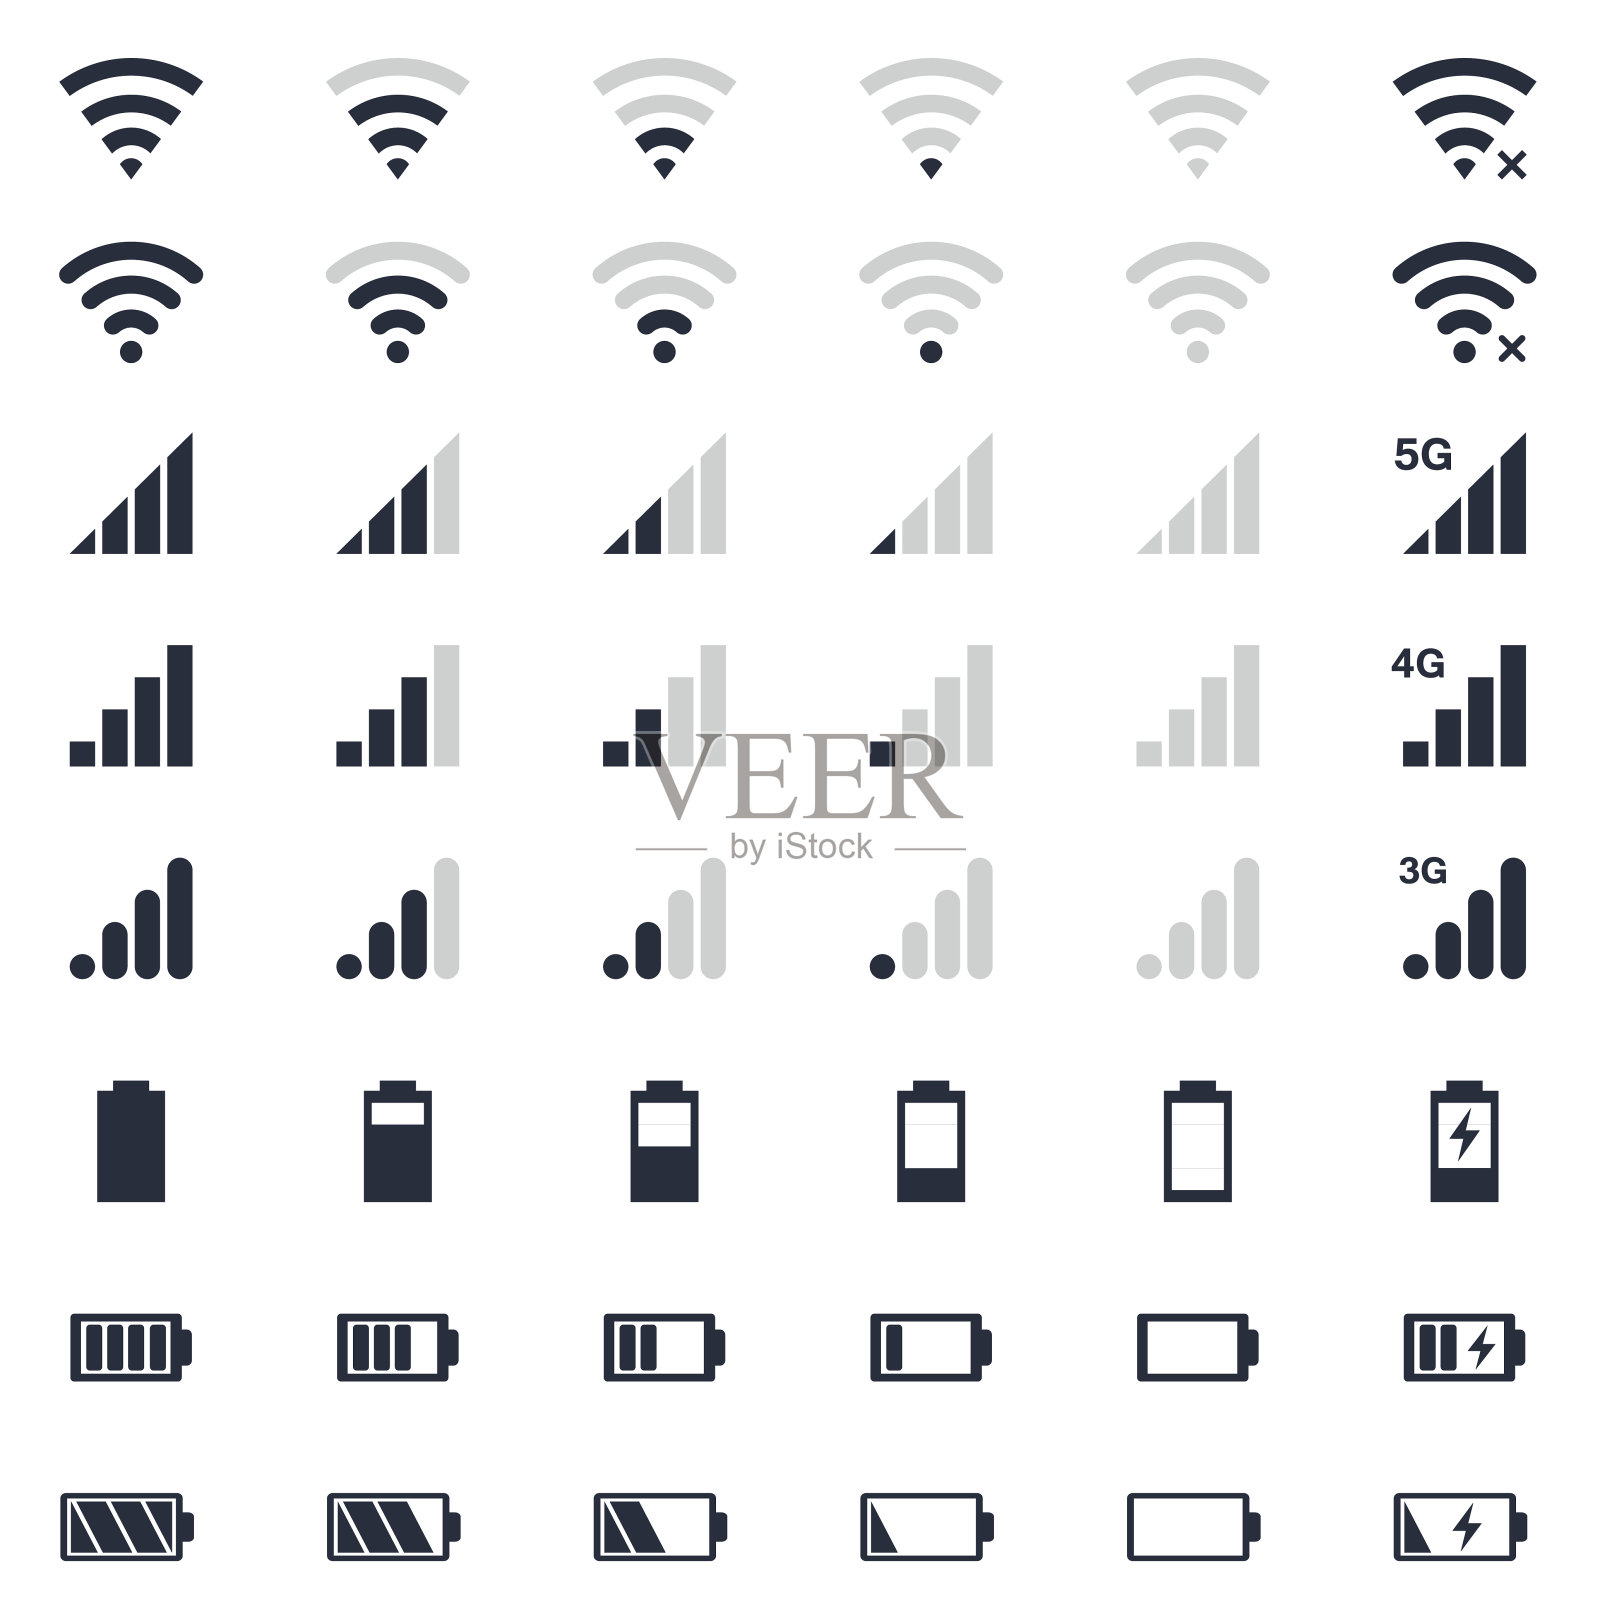 手机界面图标，电池充电，wi-fi信号，手机信号水平图标设置图标素材